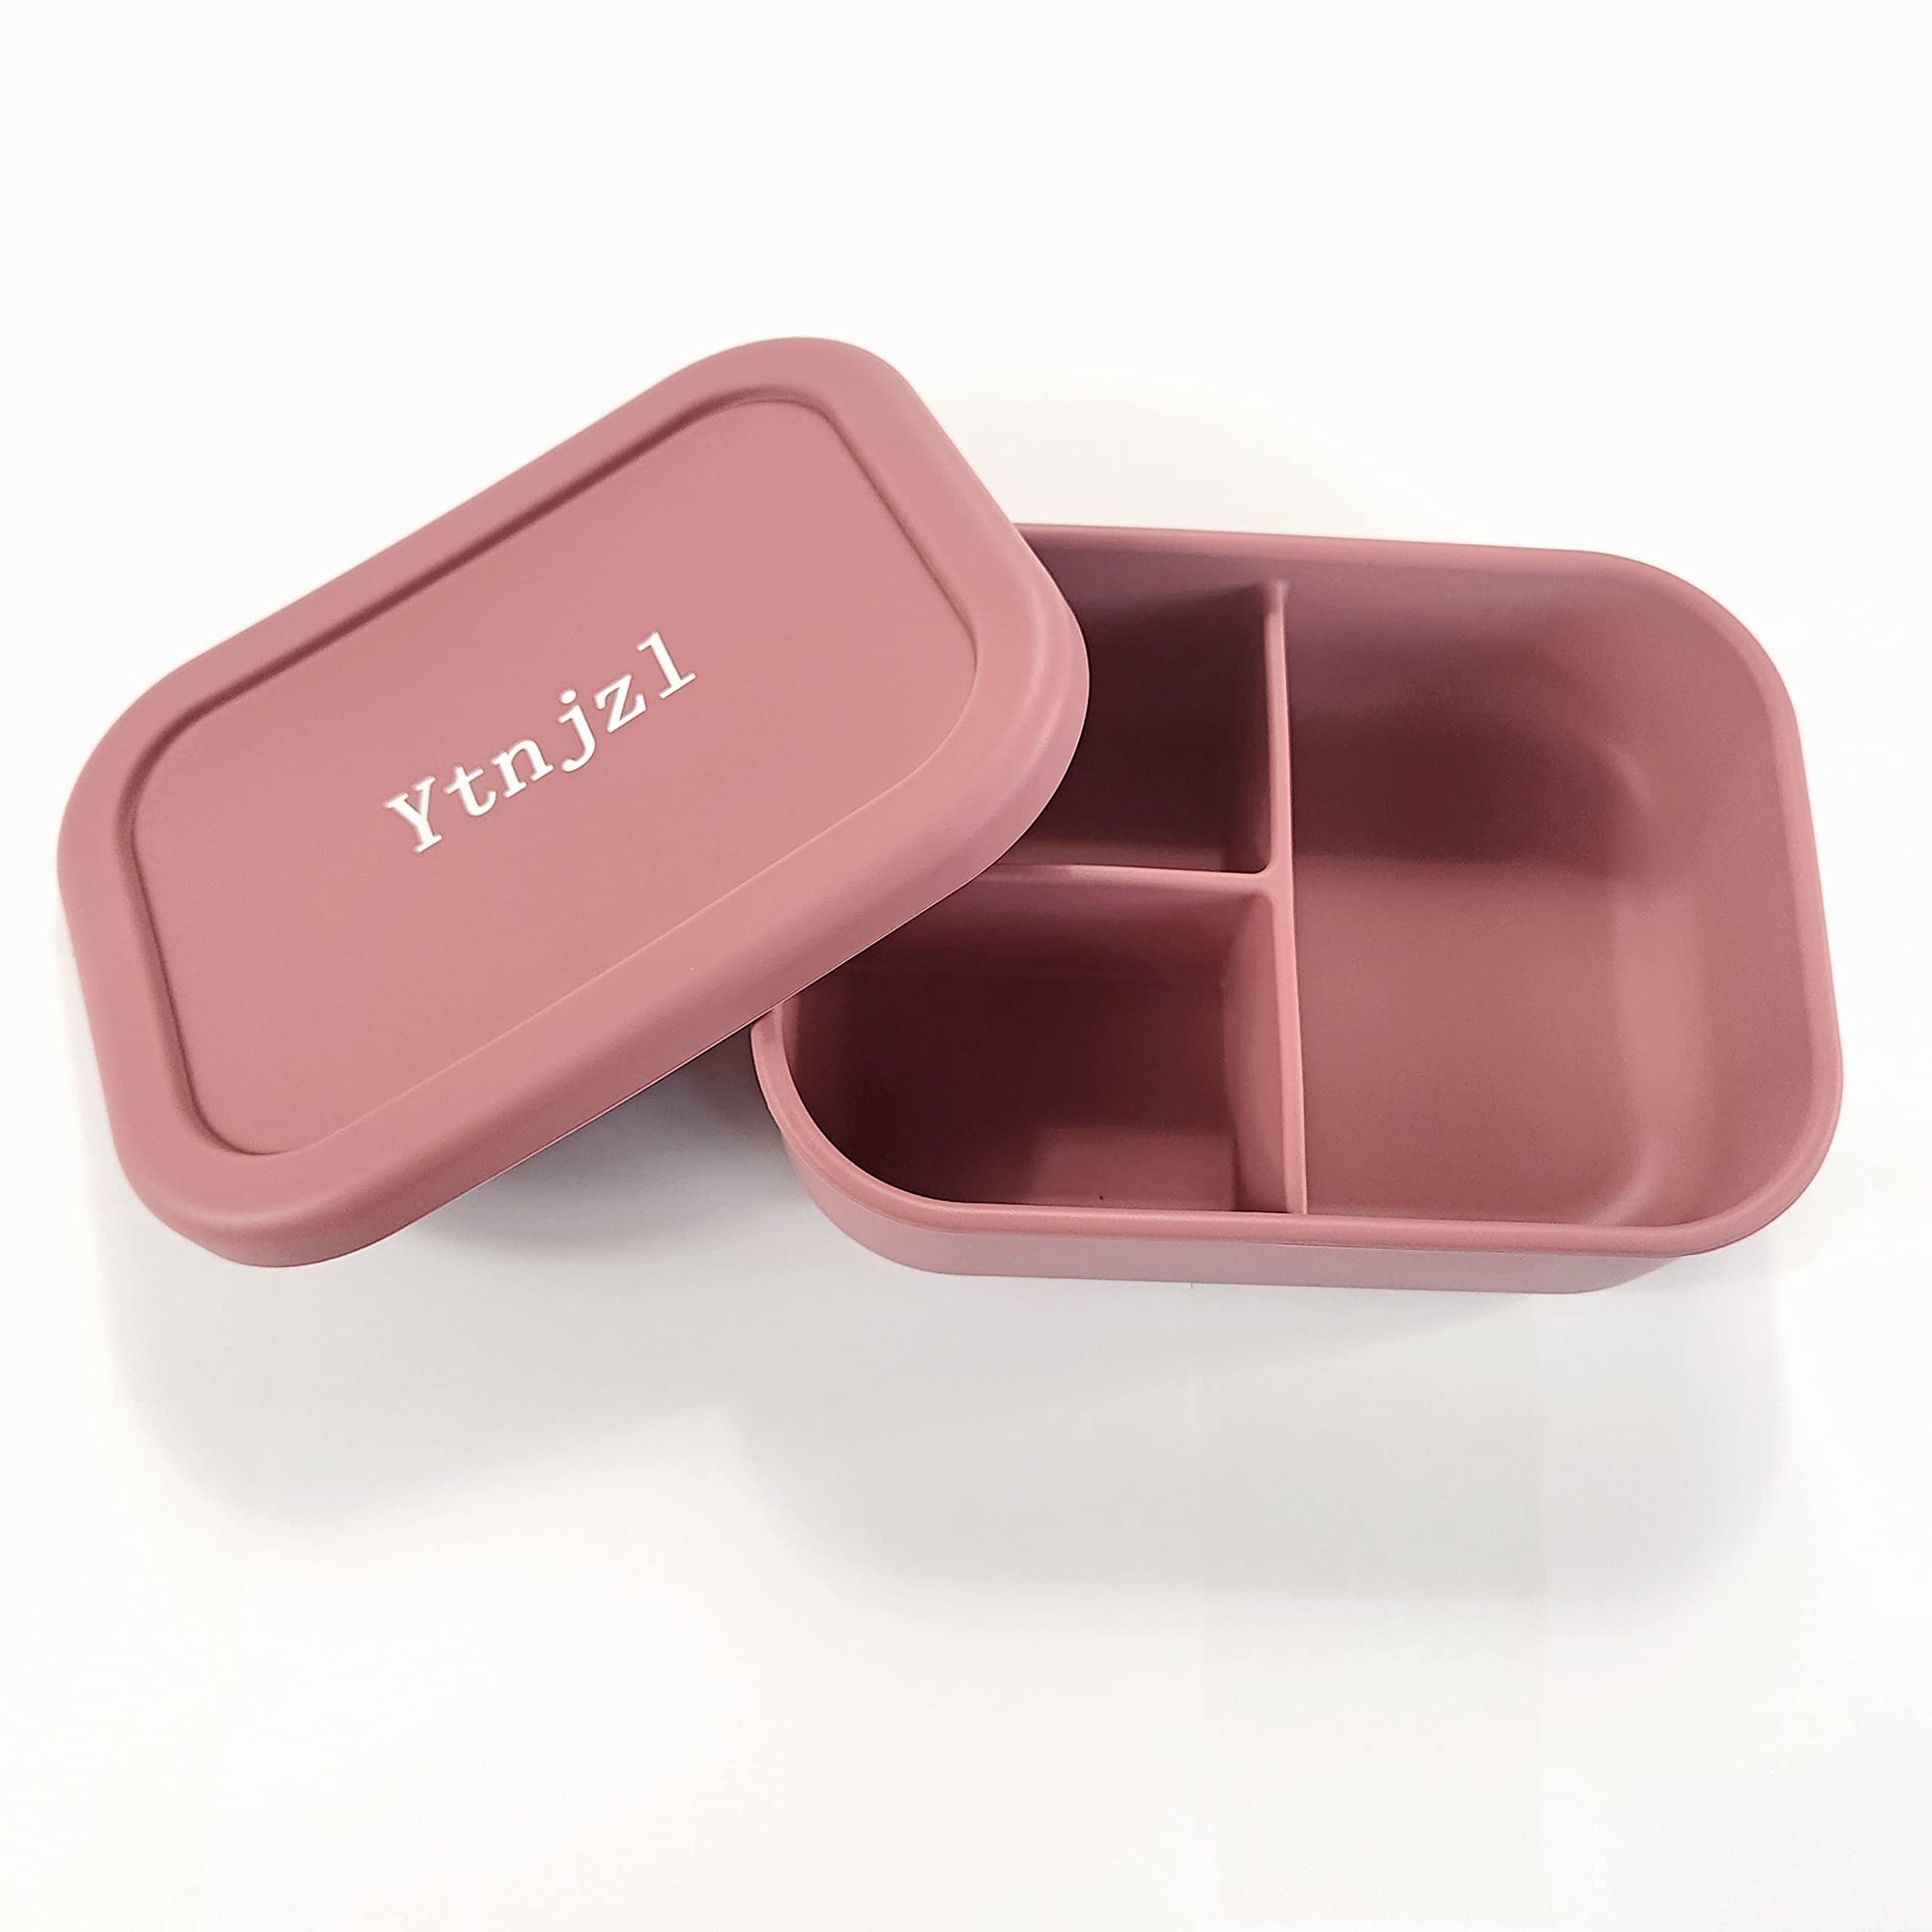 Ytnjzl Lonchera térmica Bento Box Fo para almacenamiento de alimentos